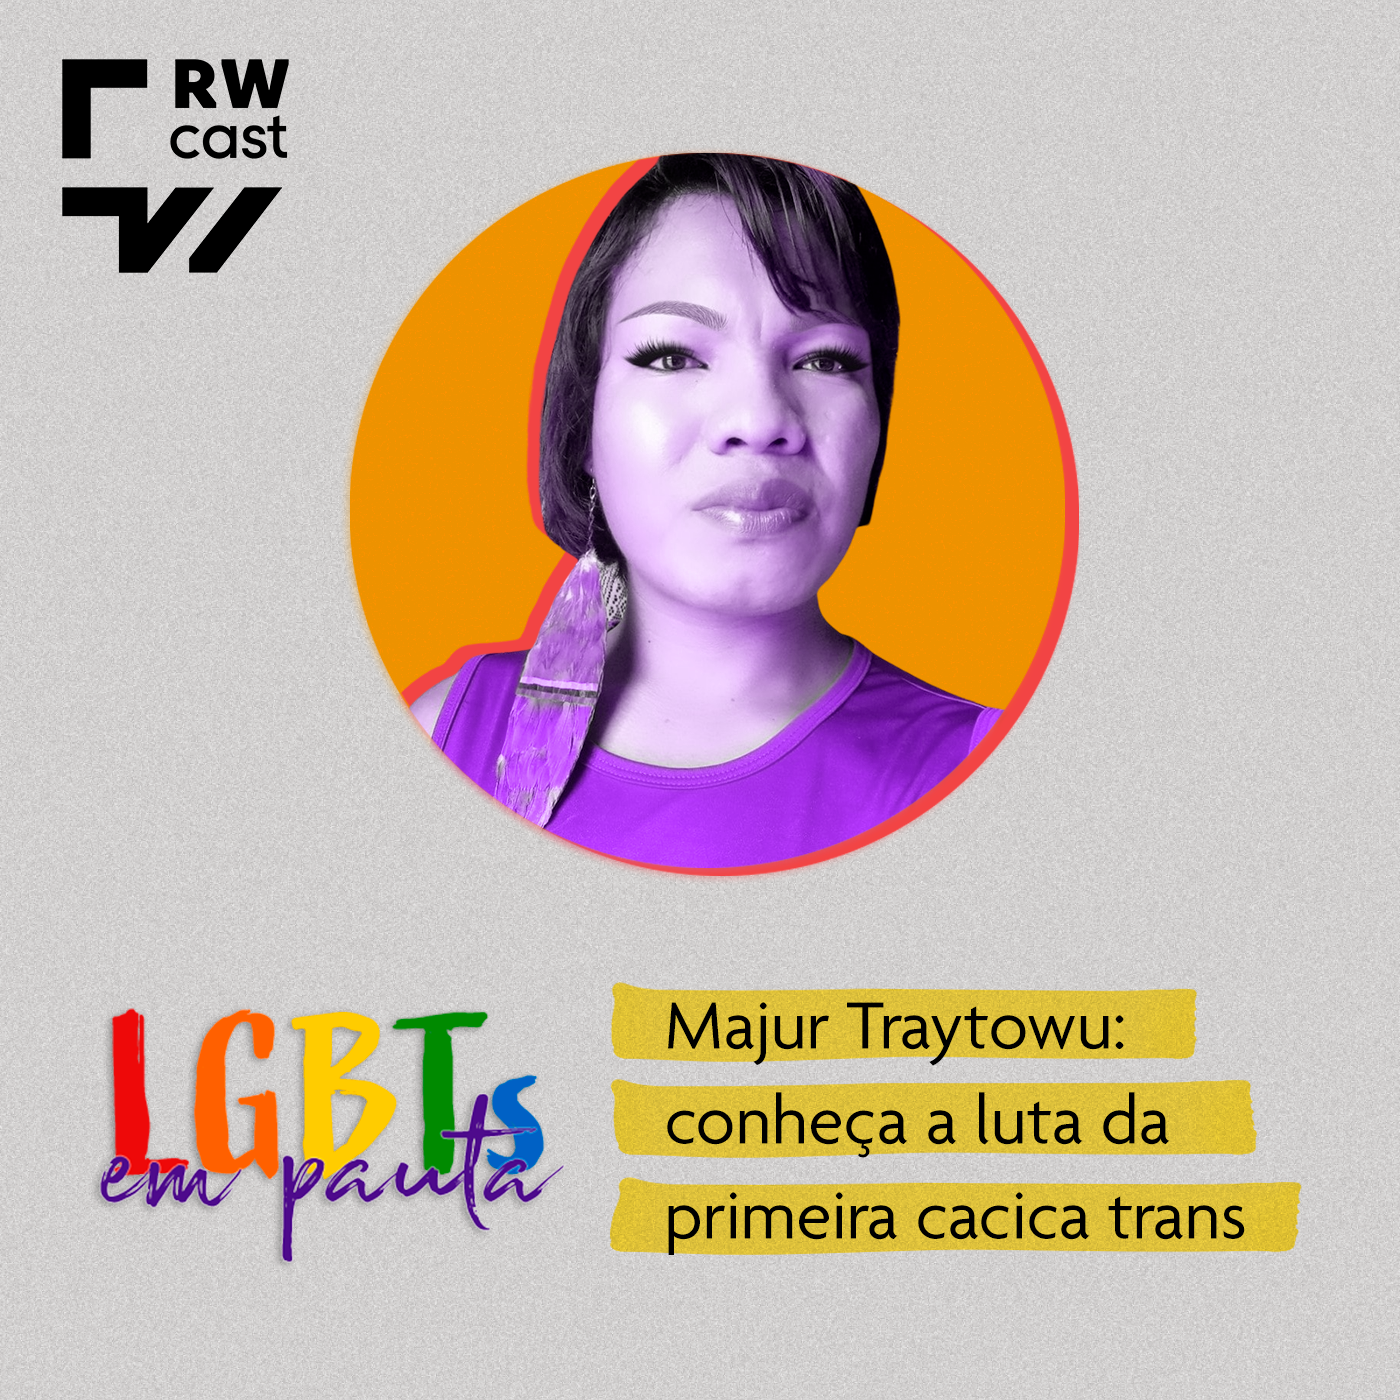 Majur Traytowu: conheça a luta da primeira cacica trans